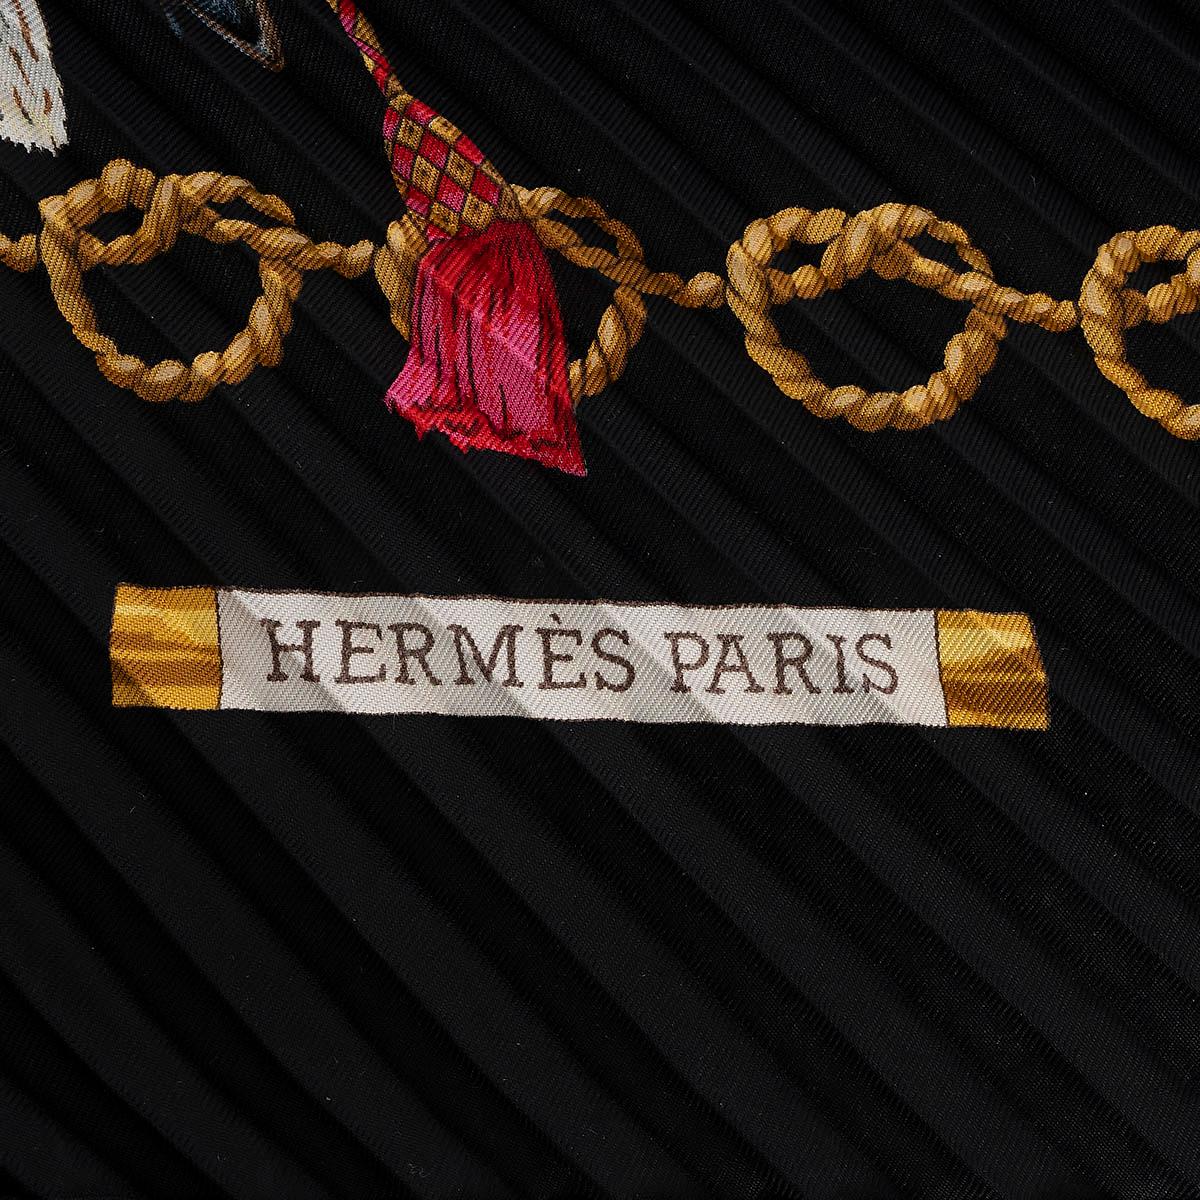 100% authentique Hermès Les Oiseaux du Roy 90 foulard en soie plissée noir avec détails or, gris, bleu et rouge. A été porté et est en excellent état. Livré avec boîte. 

Mesures
Largeur	90cm (35.1in)
Longueur	90cm (35.1in)

Toutes nos annonces